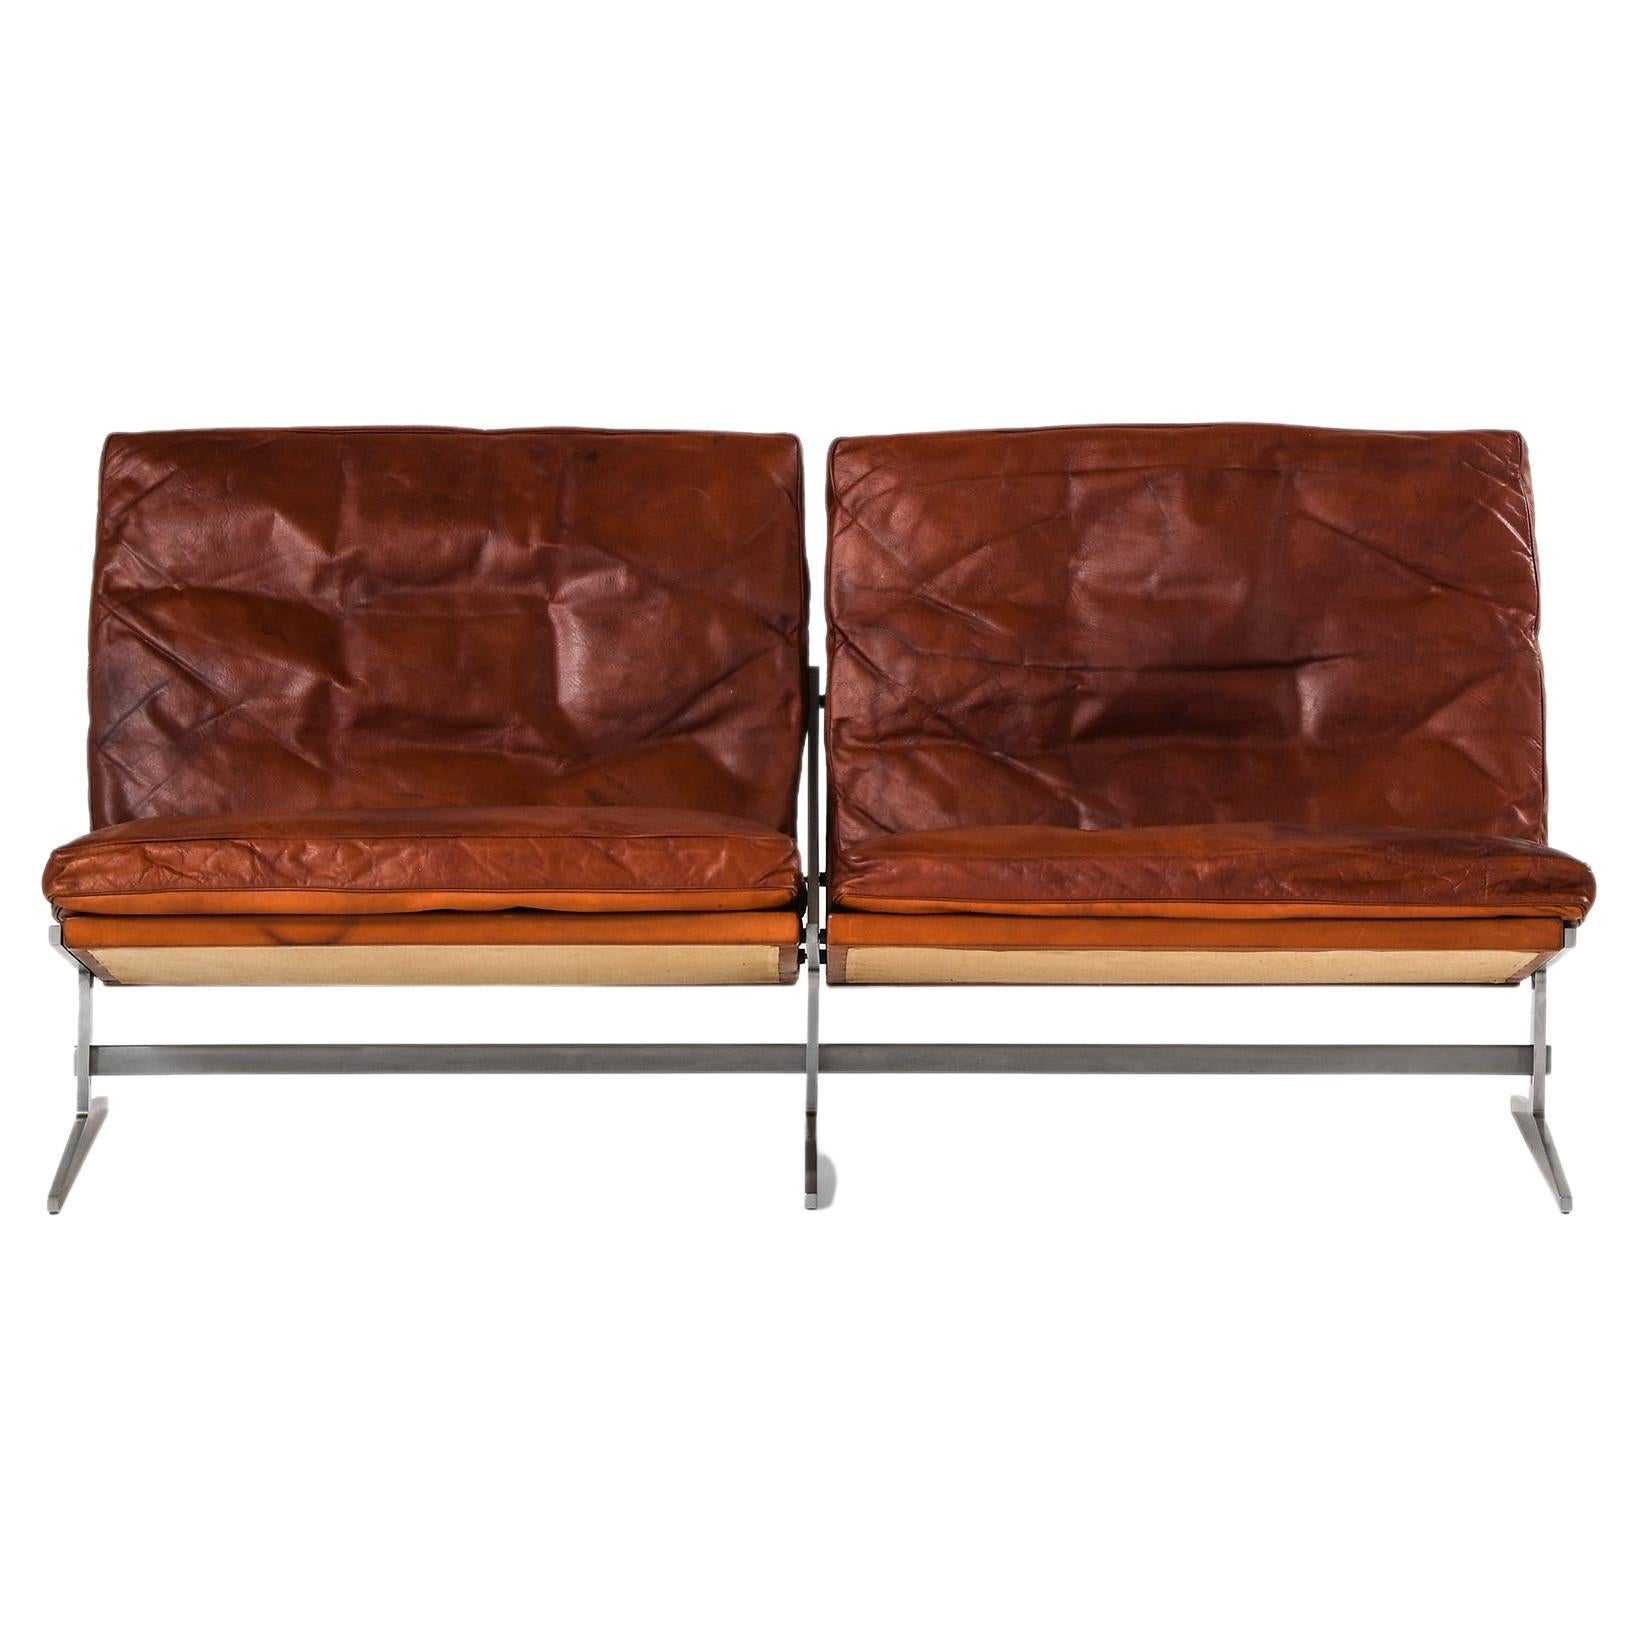 Zweisitziges Sofa aus Stahl und Leder von Jørgen Kastholm & Preben Fabricius, 1960er Jahre